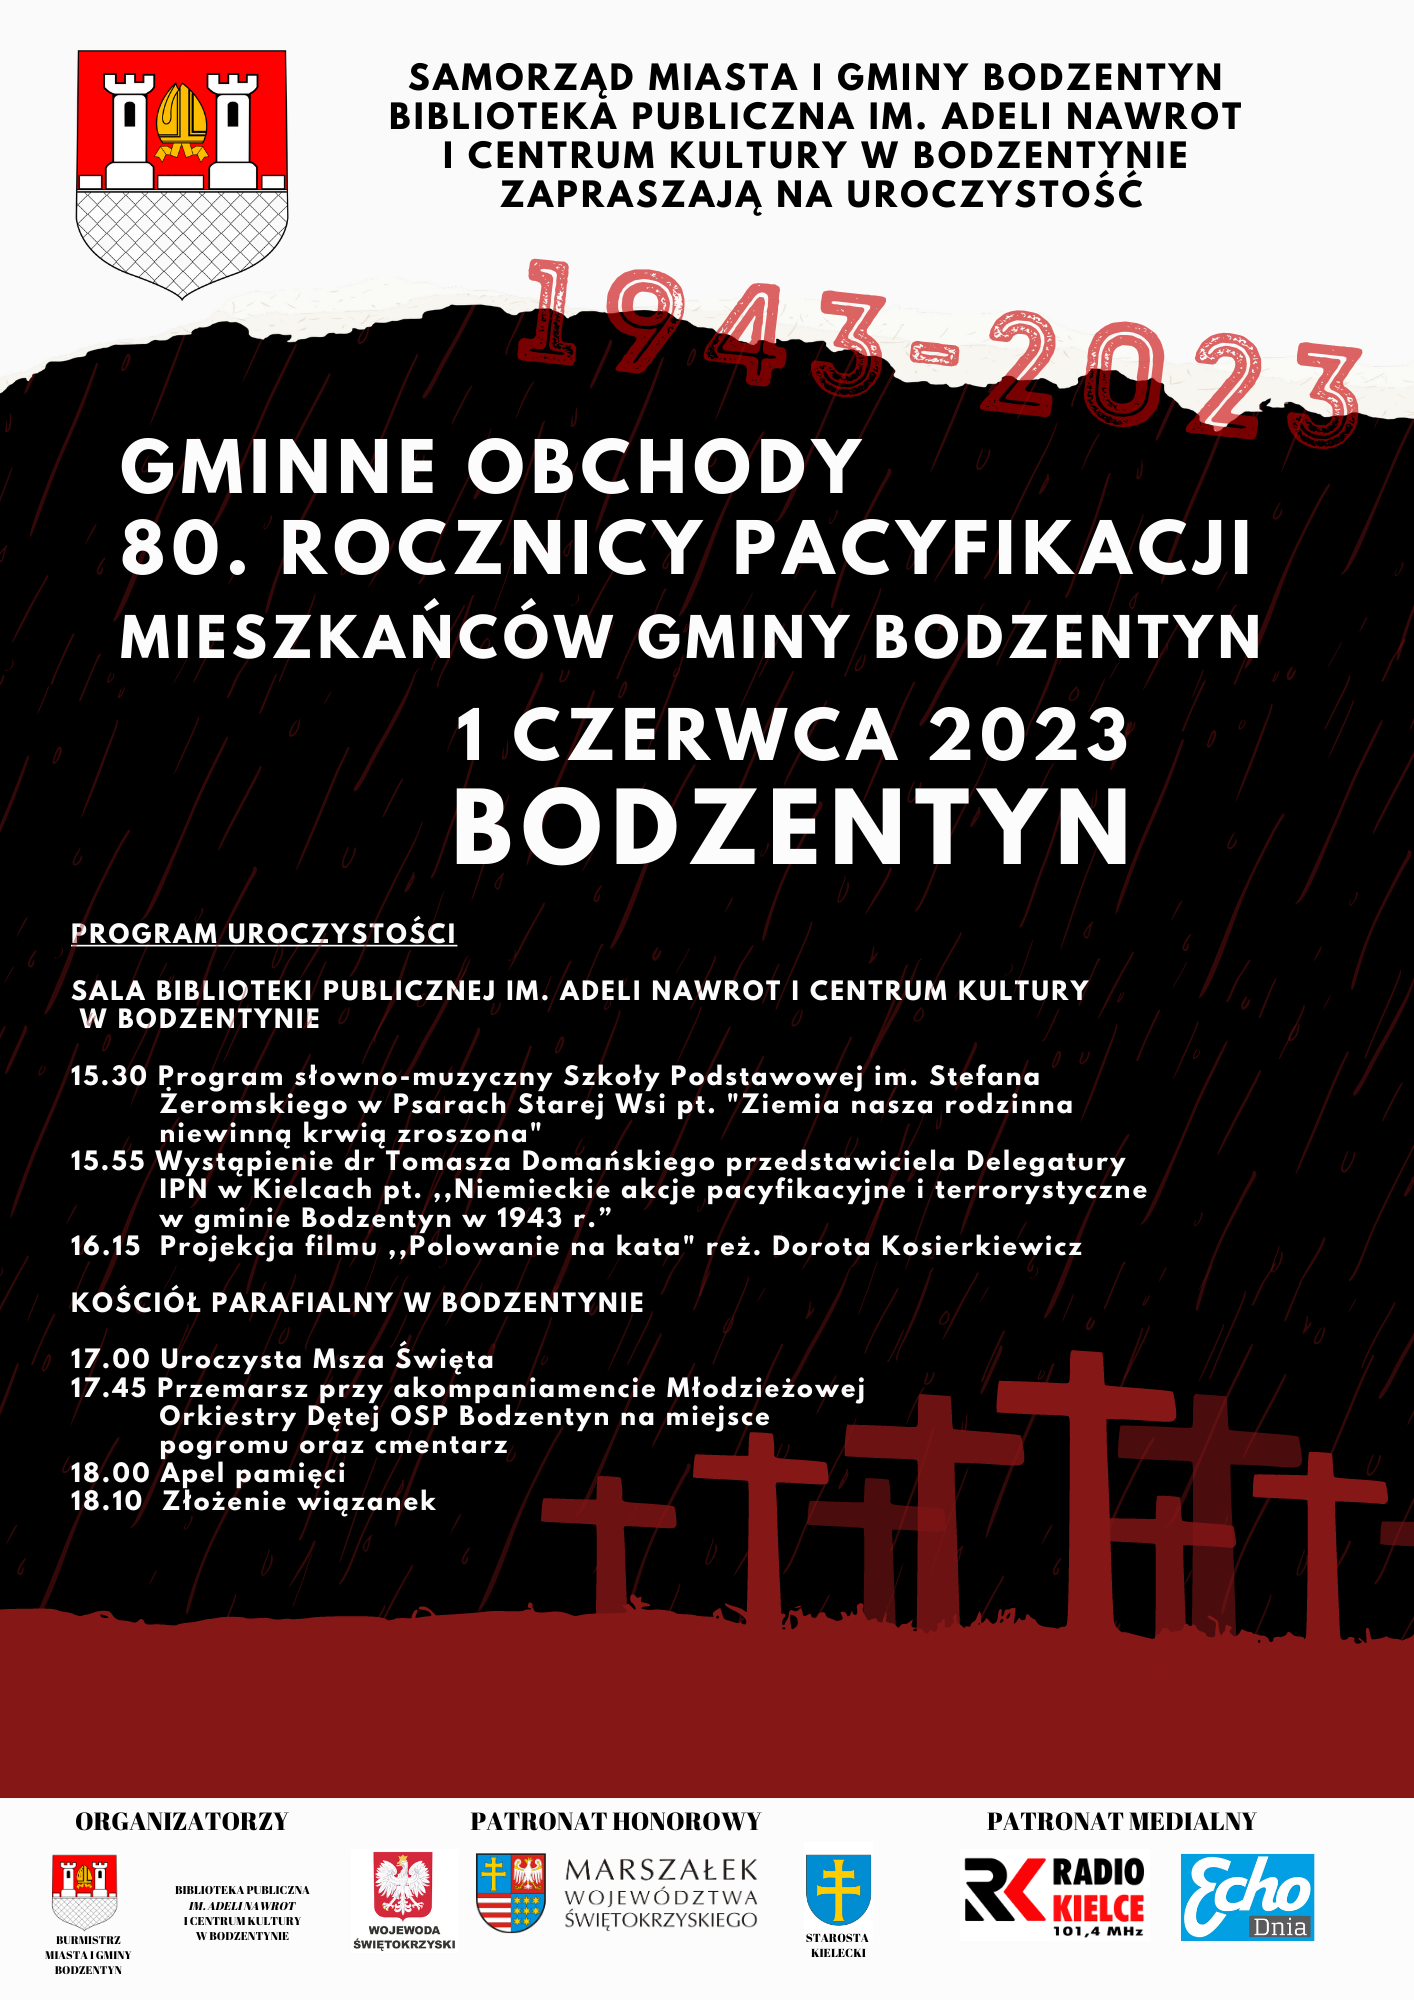 80 rocznica pacyfikacji mieszkacw gminy Bodzentyn